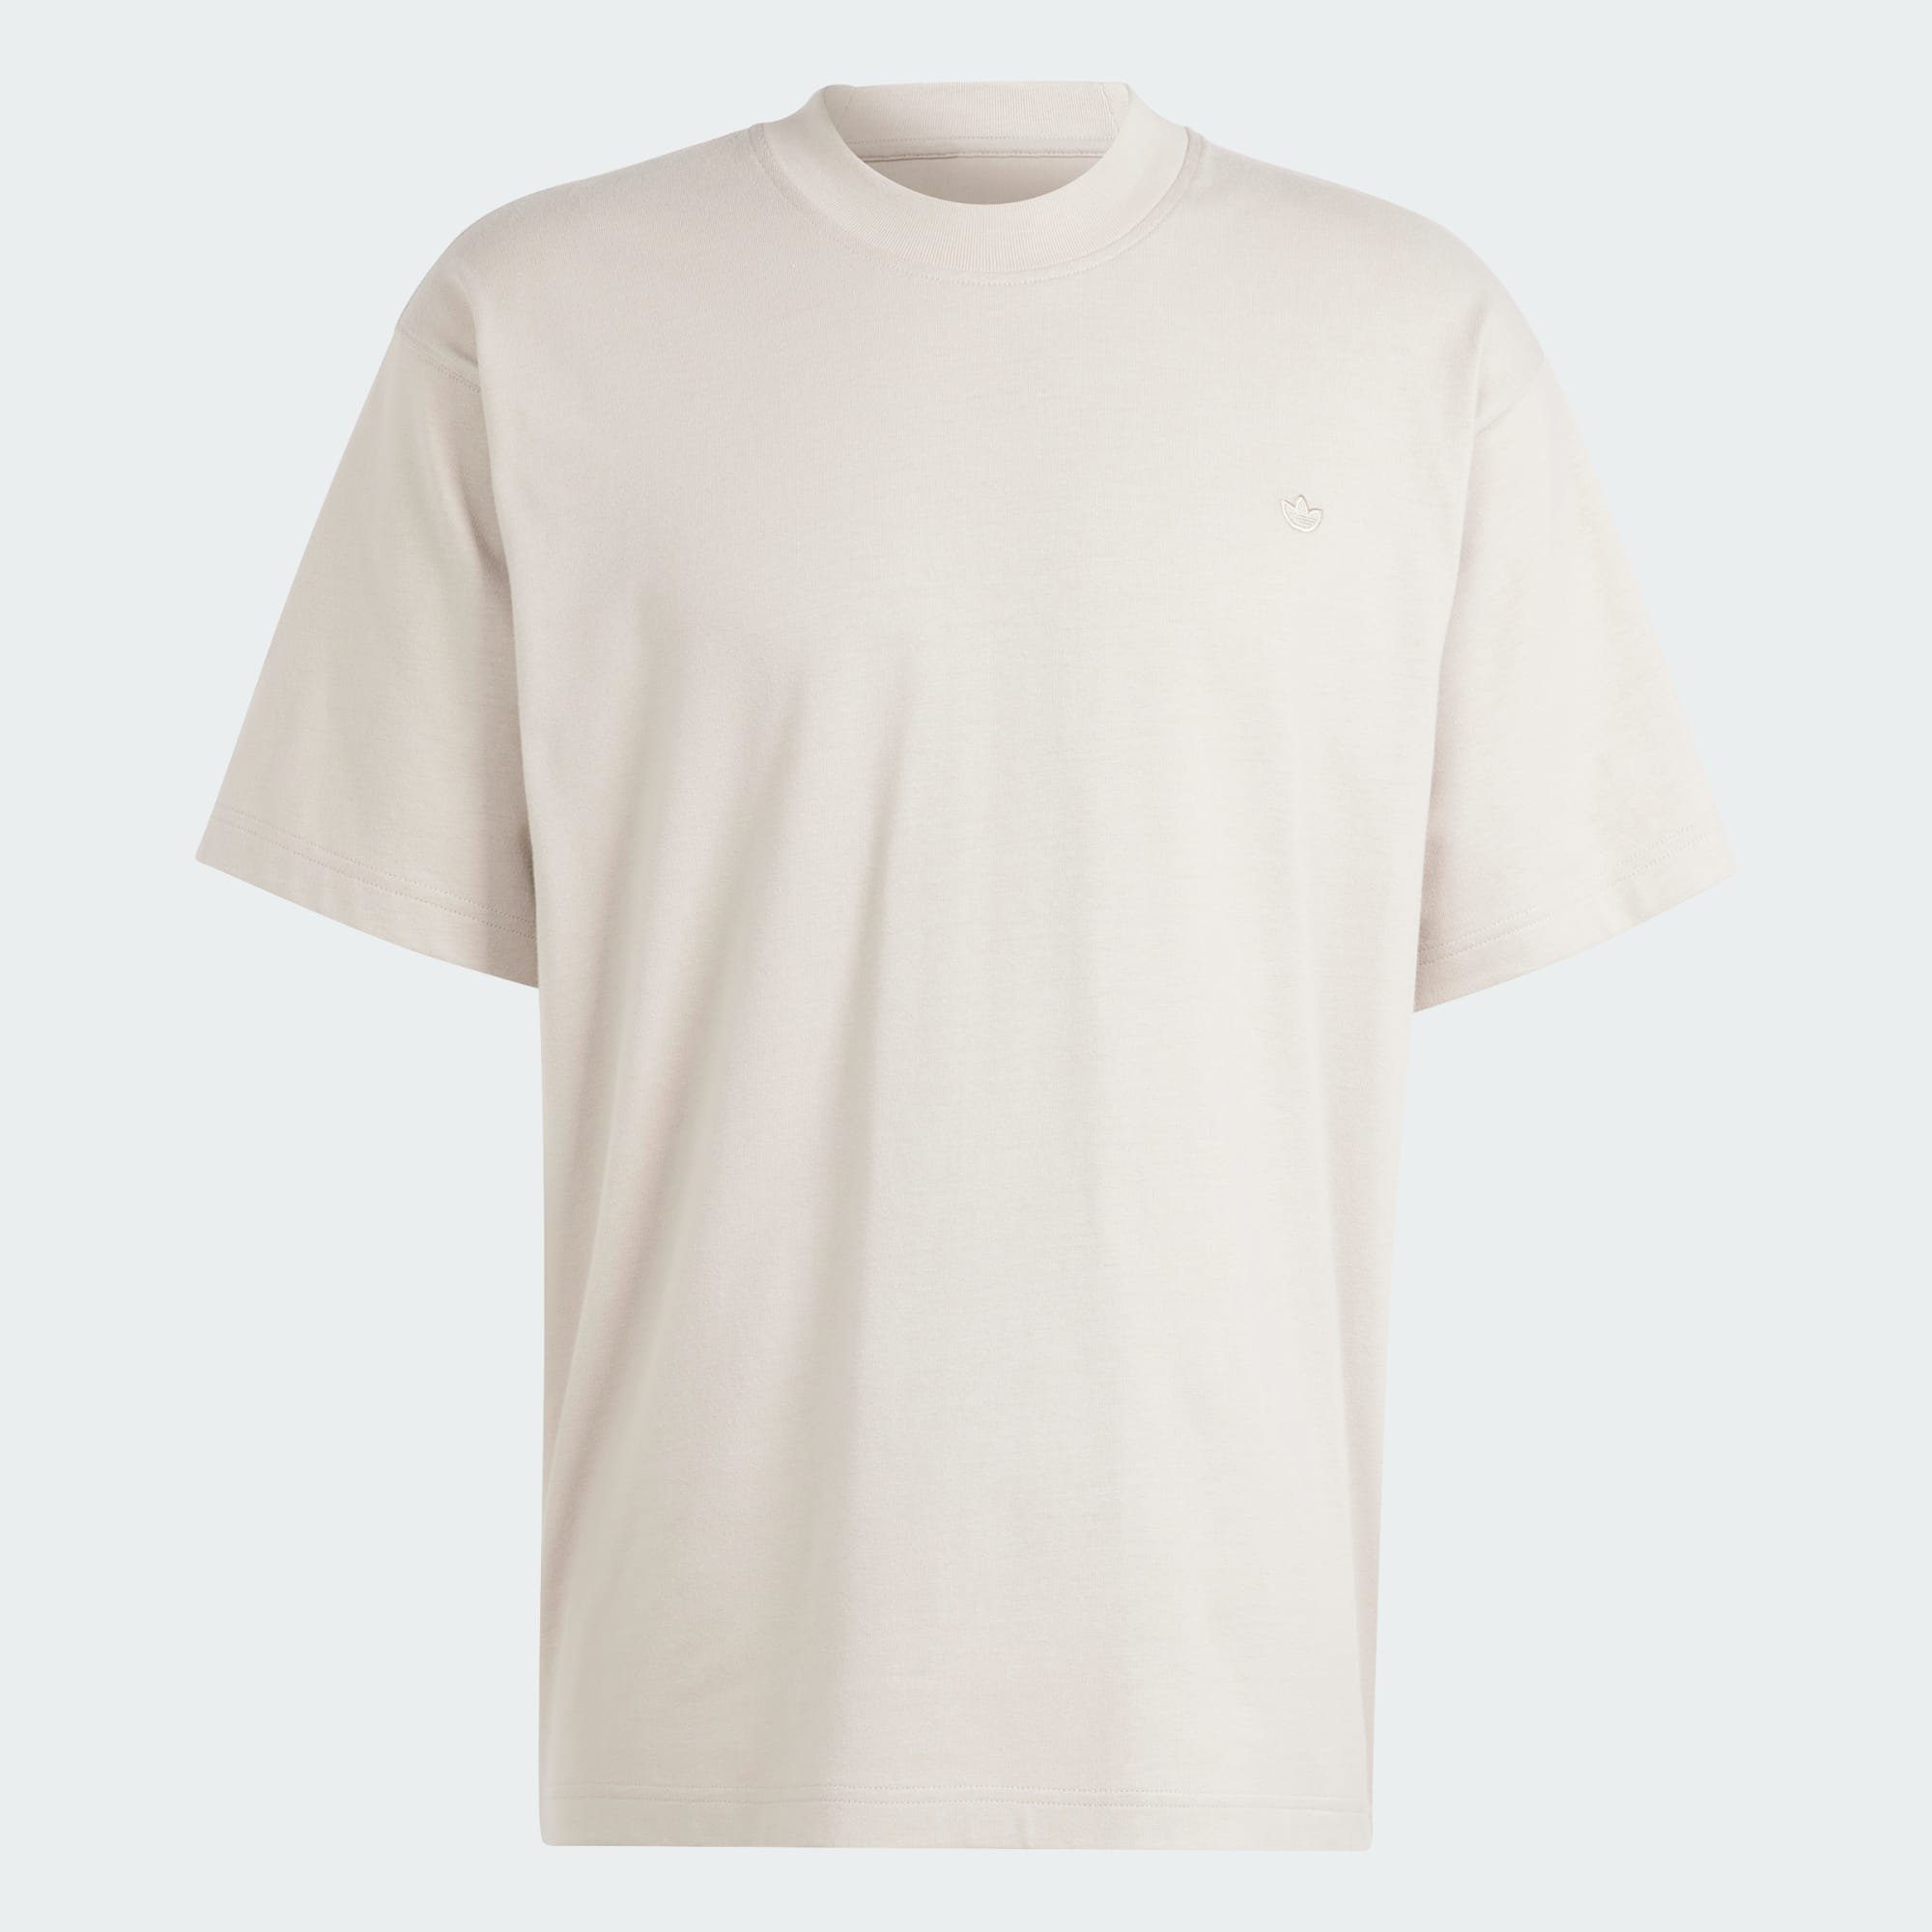 Beige T-Shirt Wonder Wonder Originals CONTEMPO / Beige T-SHIRT adidas ADICOLOR